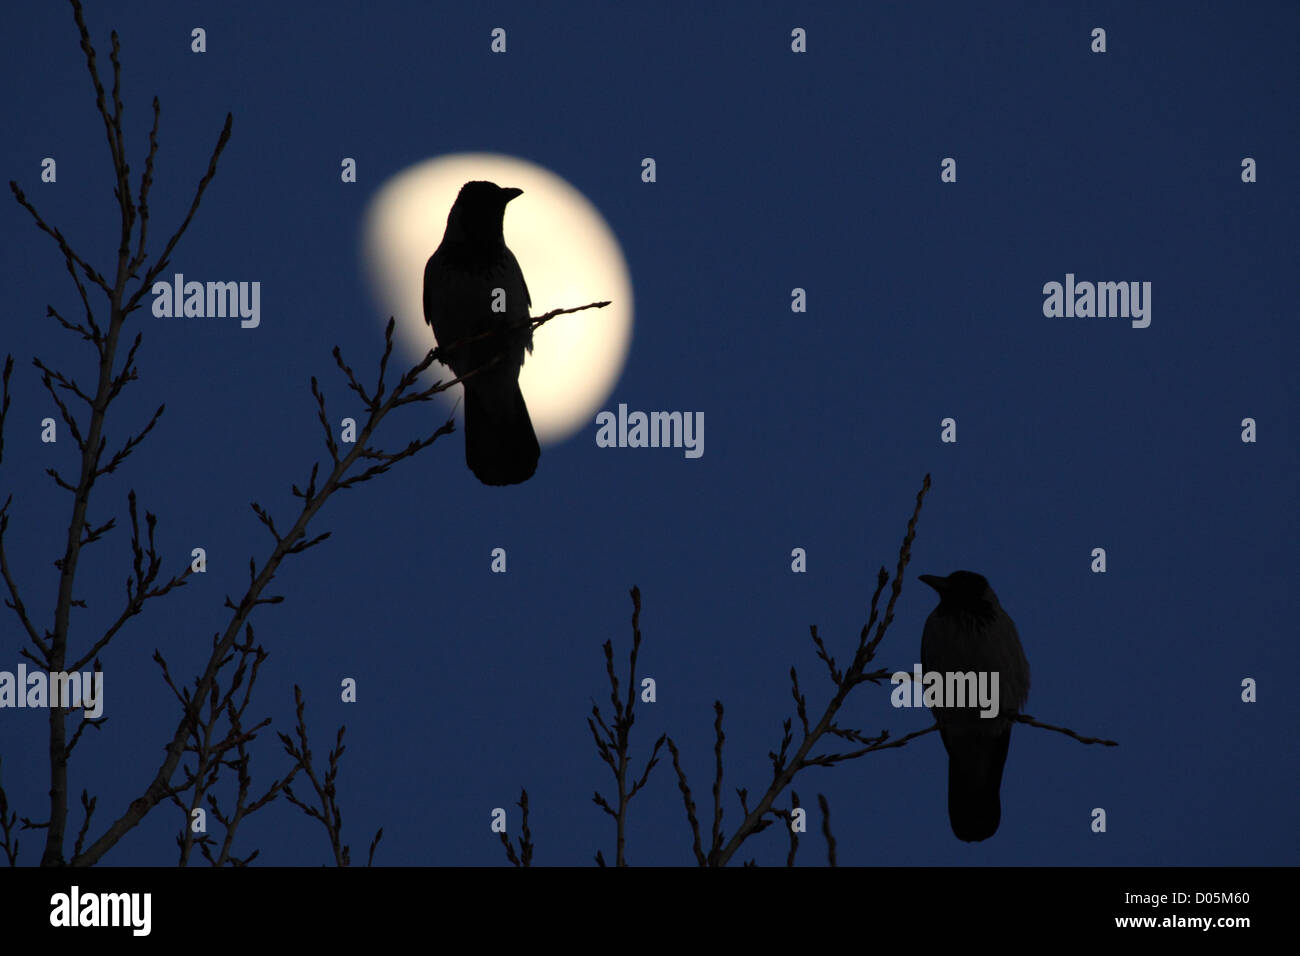 Silhouette de Hooded Crow (Corvus cornix) avec une lune Banque D'Images